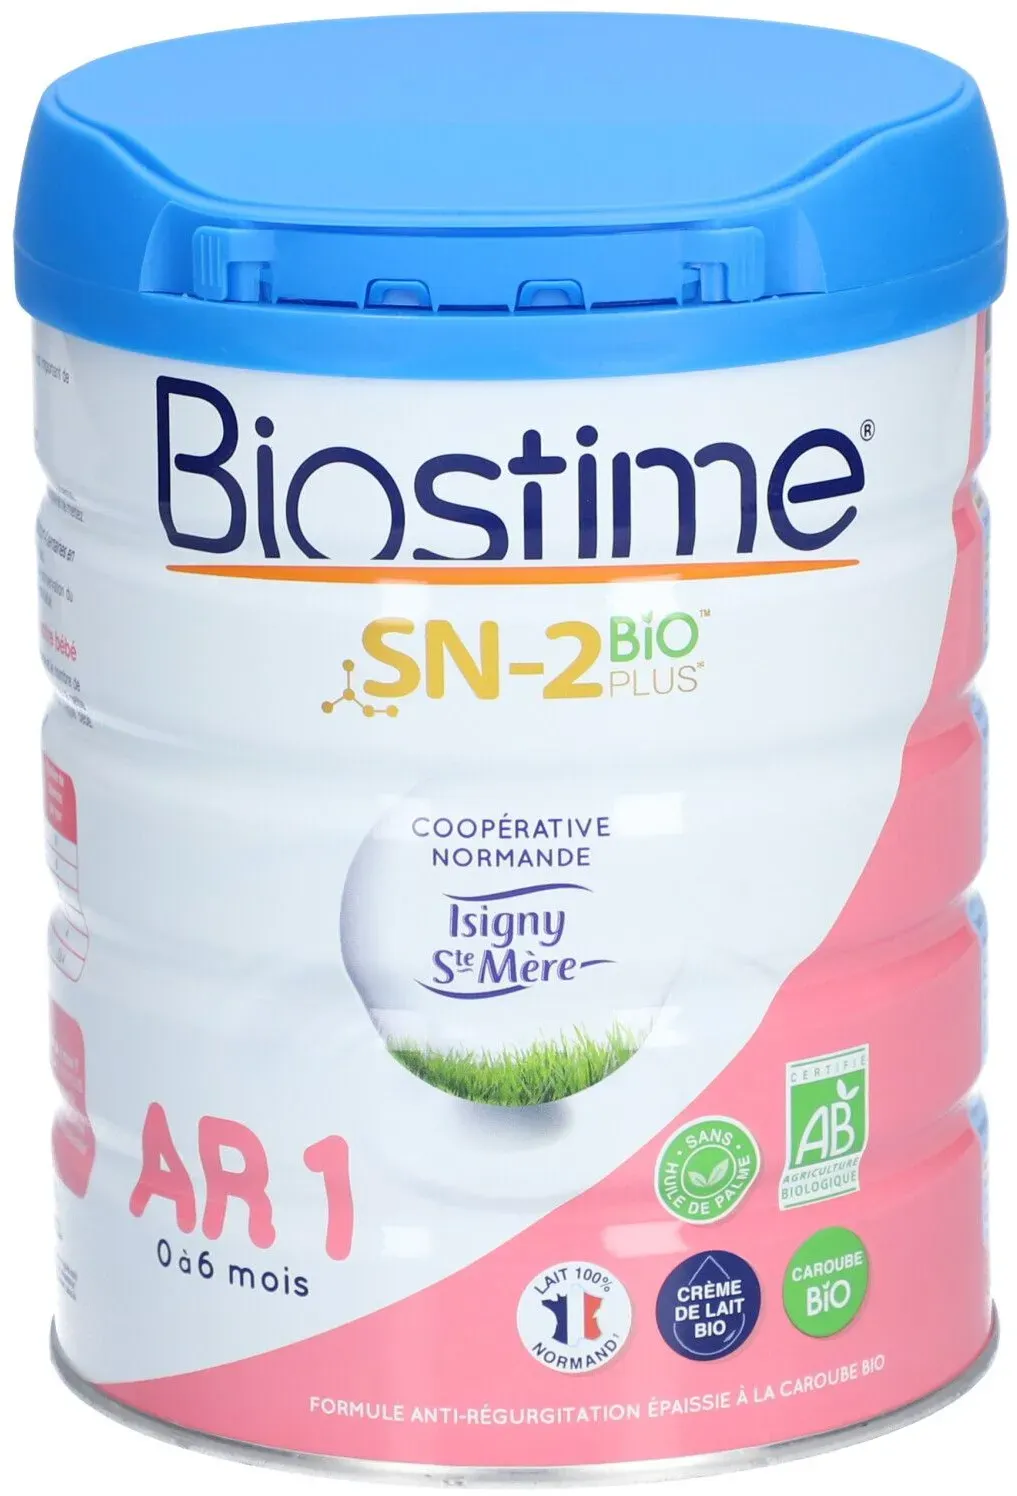 Biostime AR Denrée alimentaire destinée à des fins médicales spéciales. bt 800 g 800 g Poudre